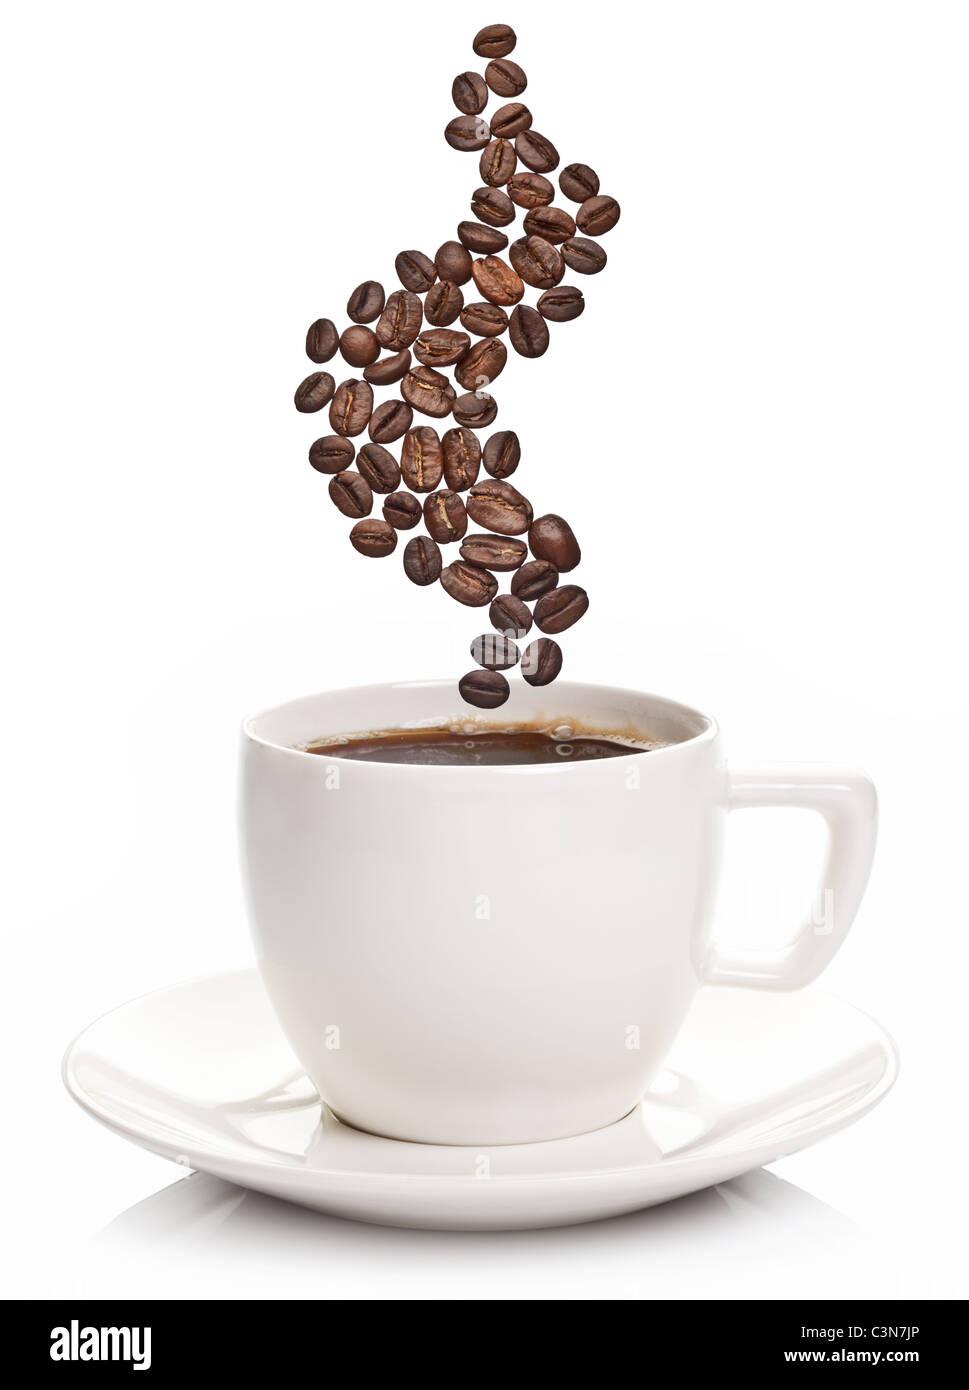 Tasse de café avec de la vapeur sous la forme de grains de café Banque D'Images